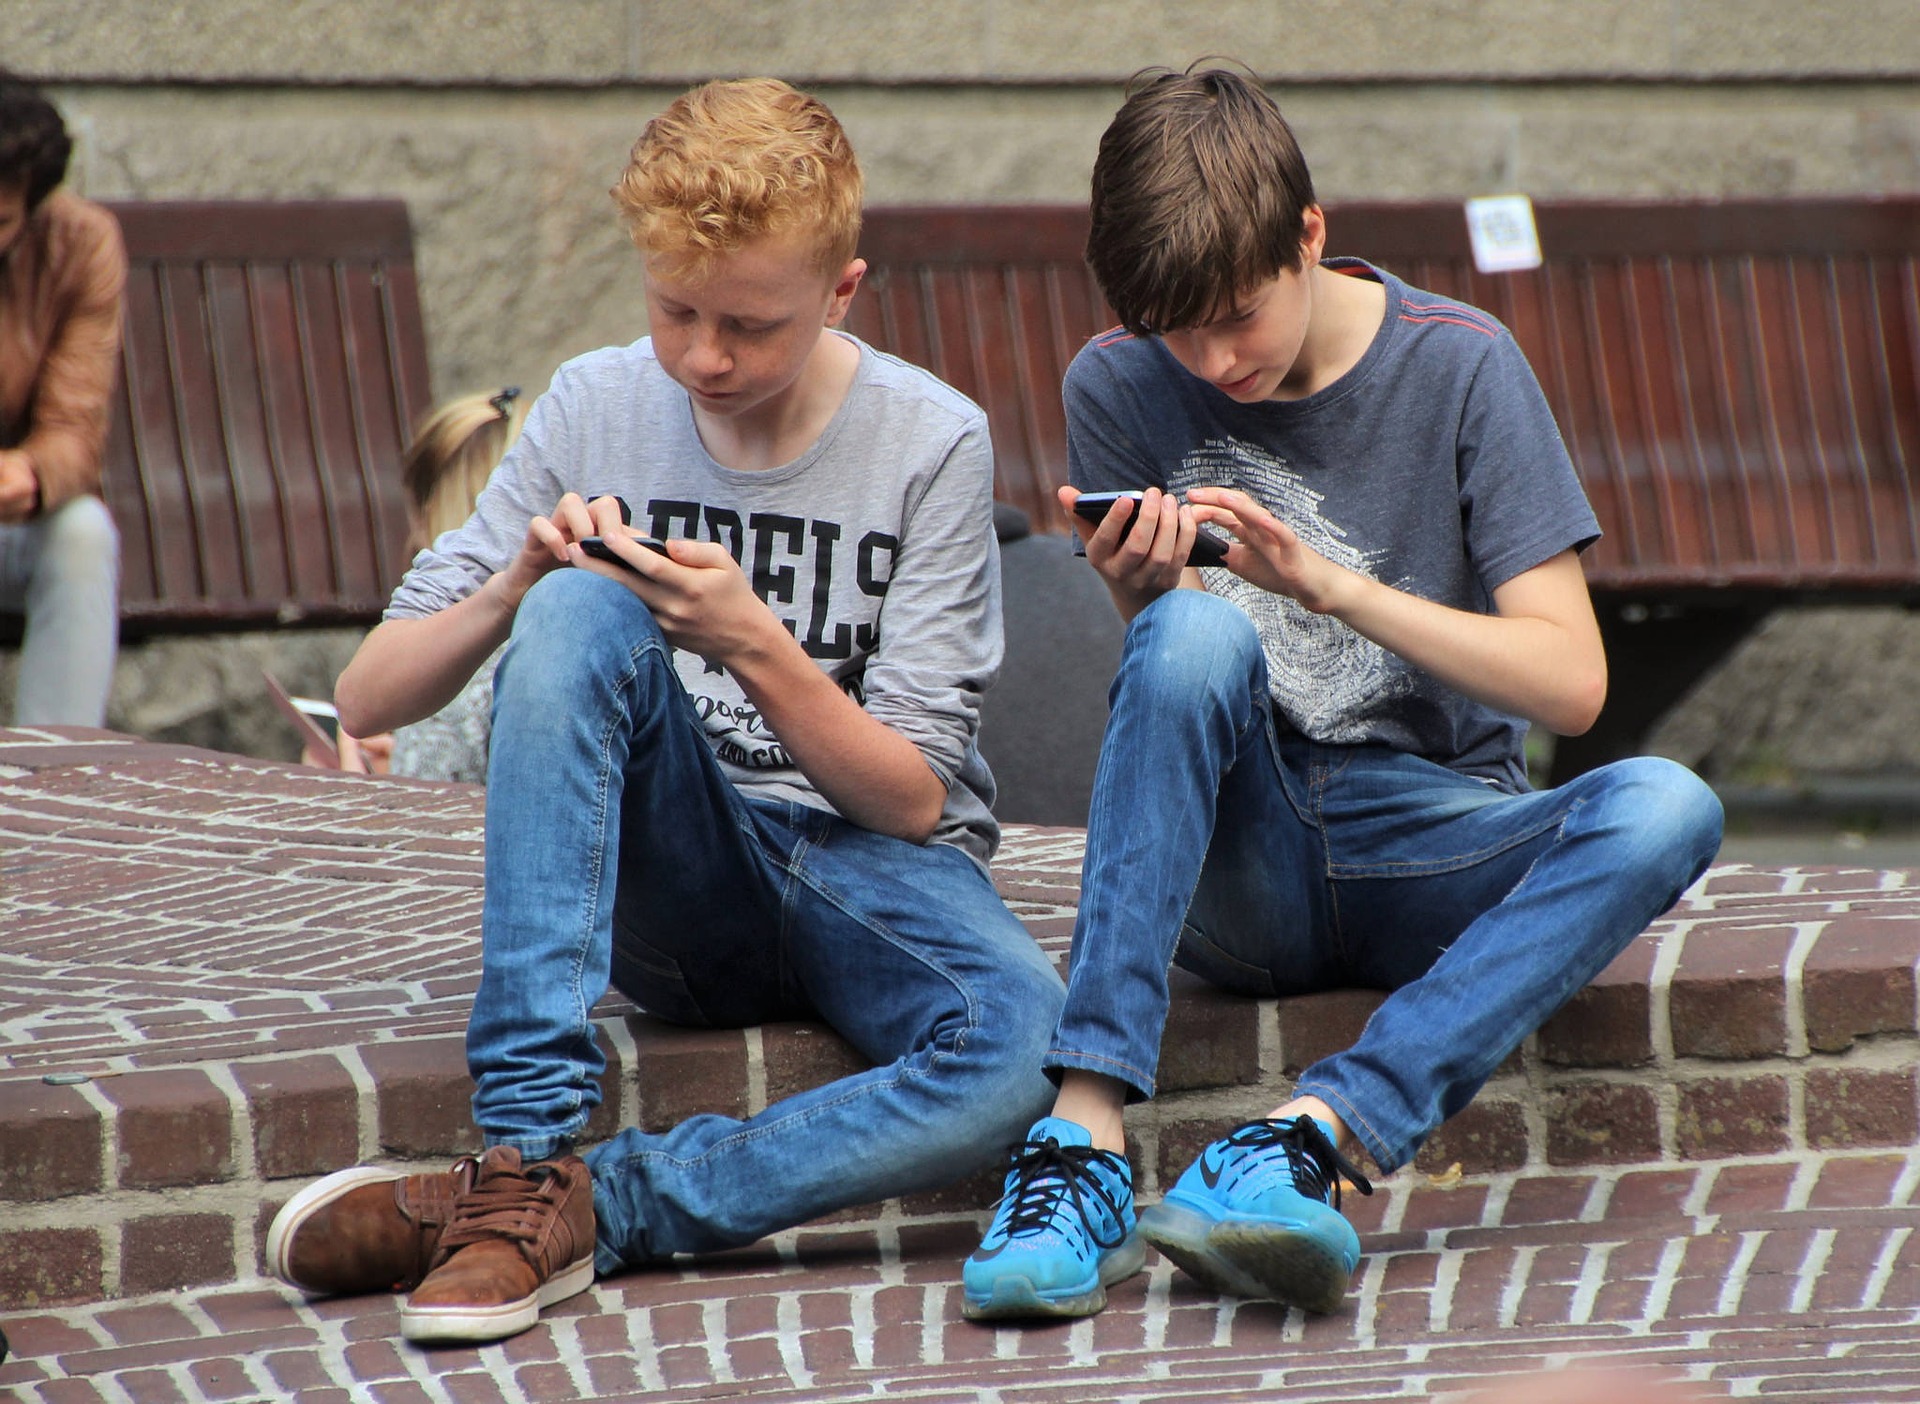  Na Mídia - Qualidade da conexão e dos dispositivos afetam a  participação de crianças e adolescentes na Internet